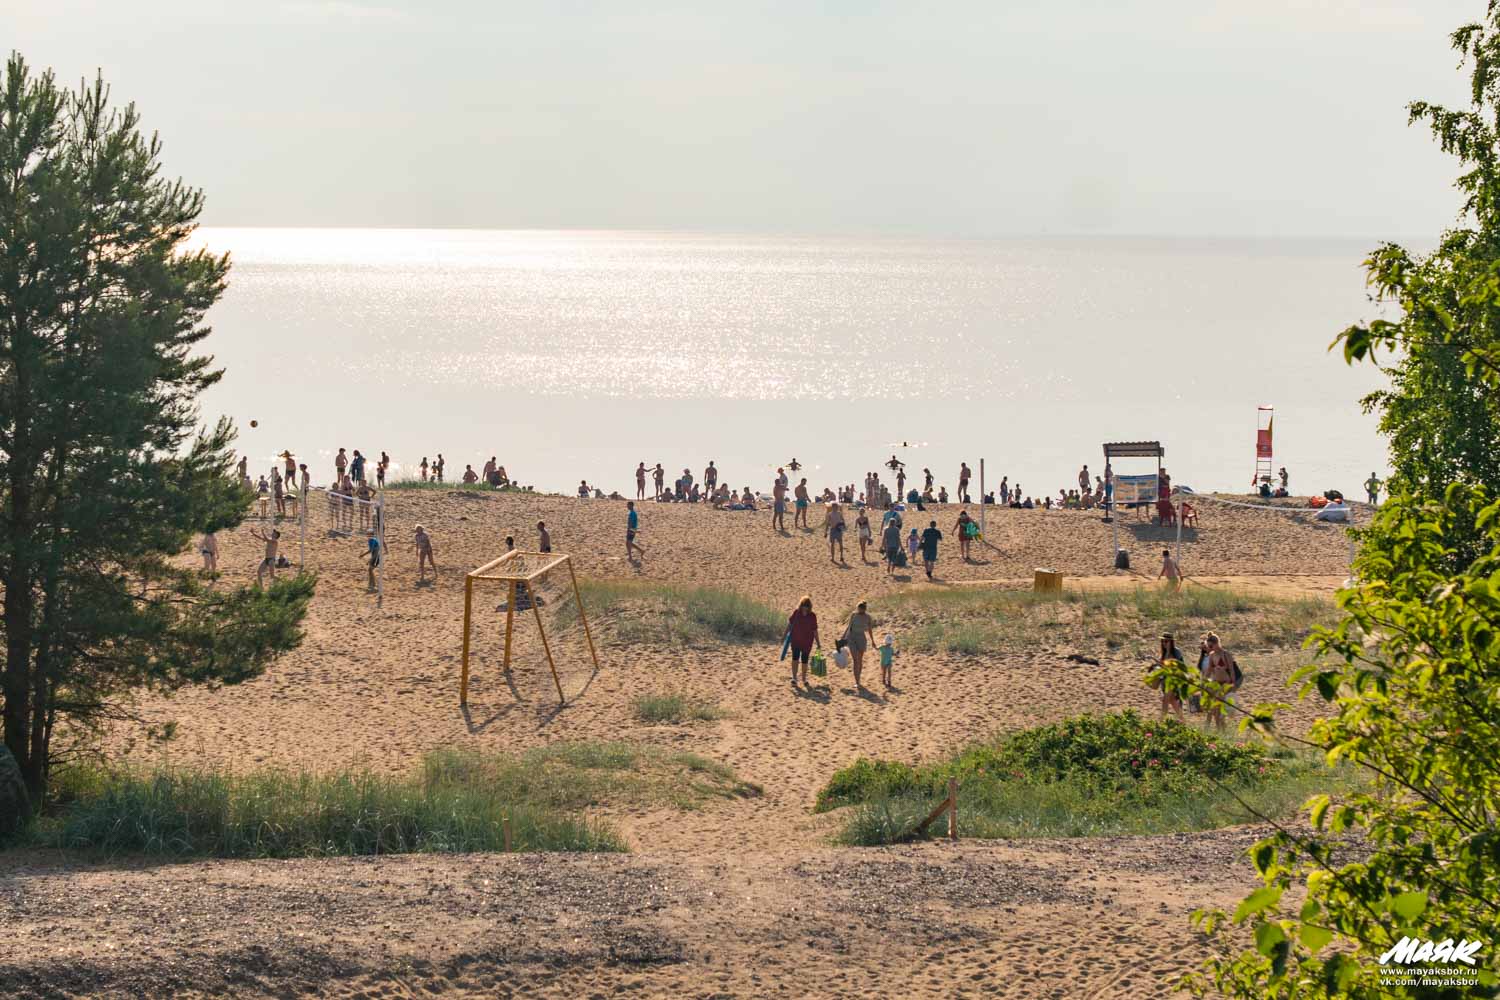 Специалисты назвали пять лучших пляжей Ленобласти. Один из них оказался сосновоборским